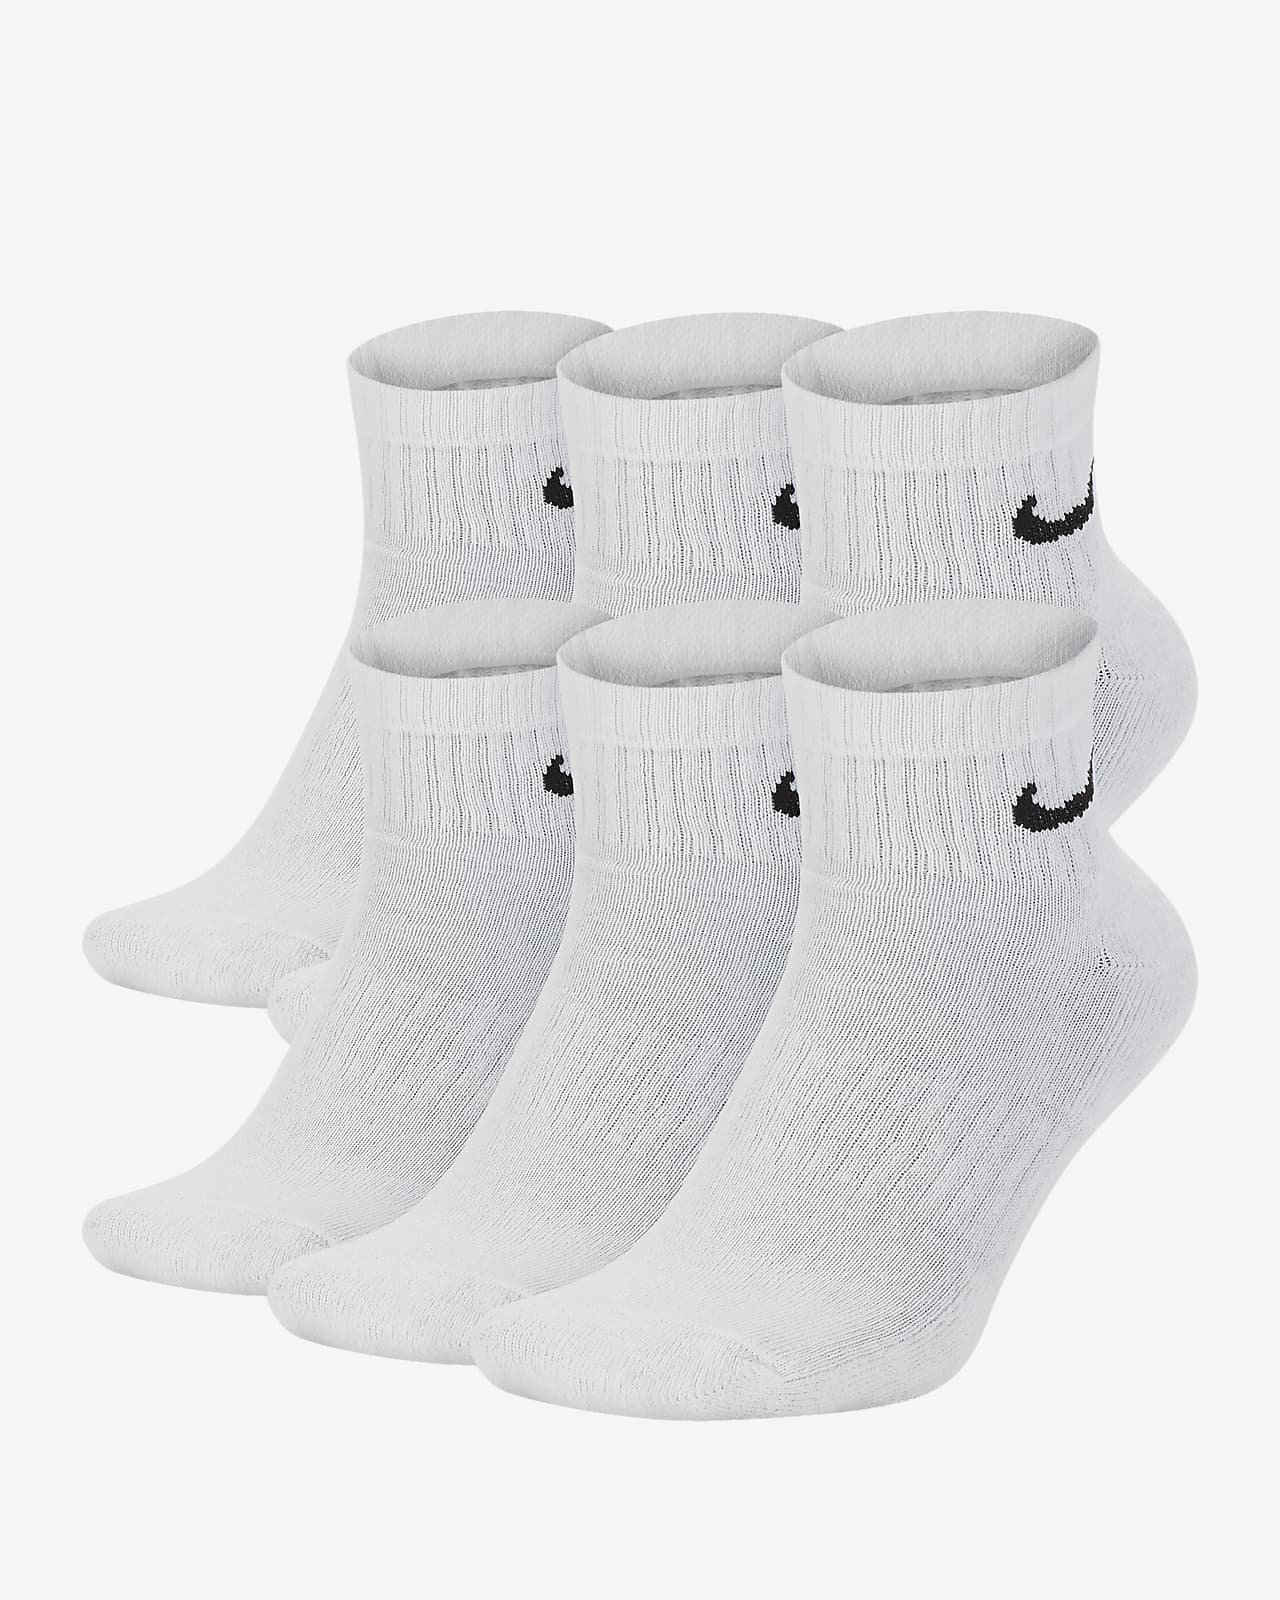 nike everyday quarter socks